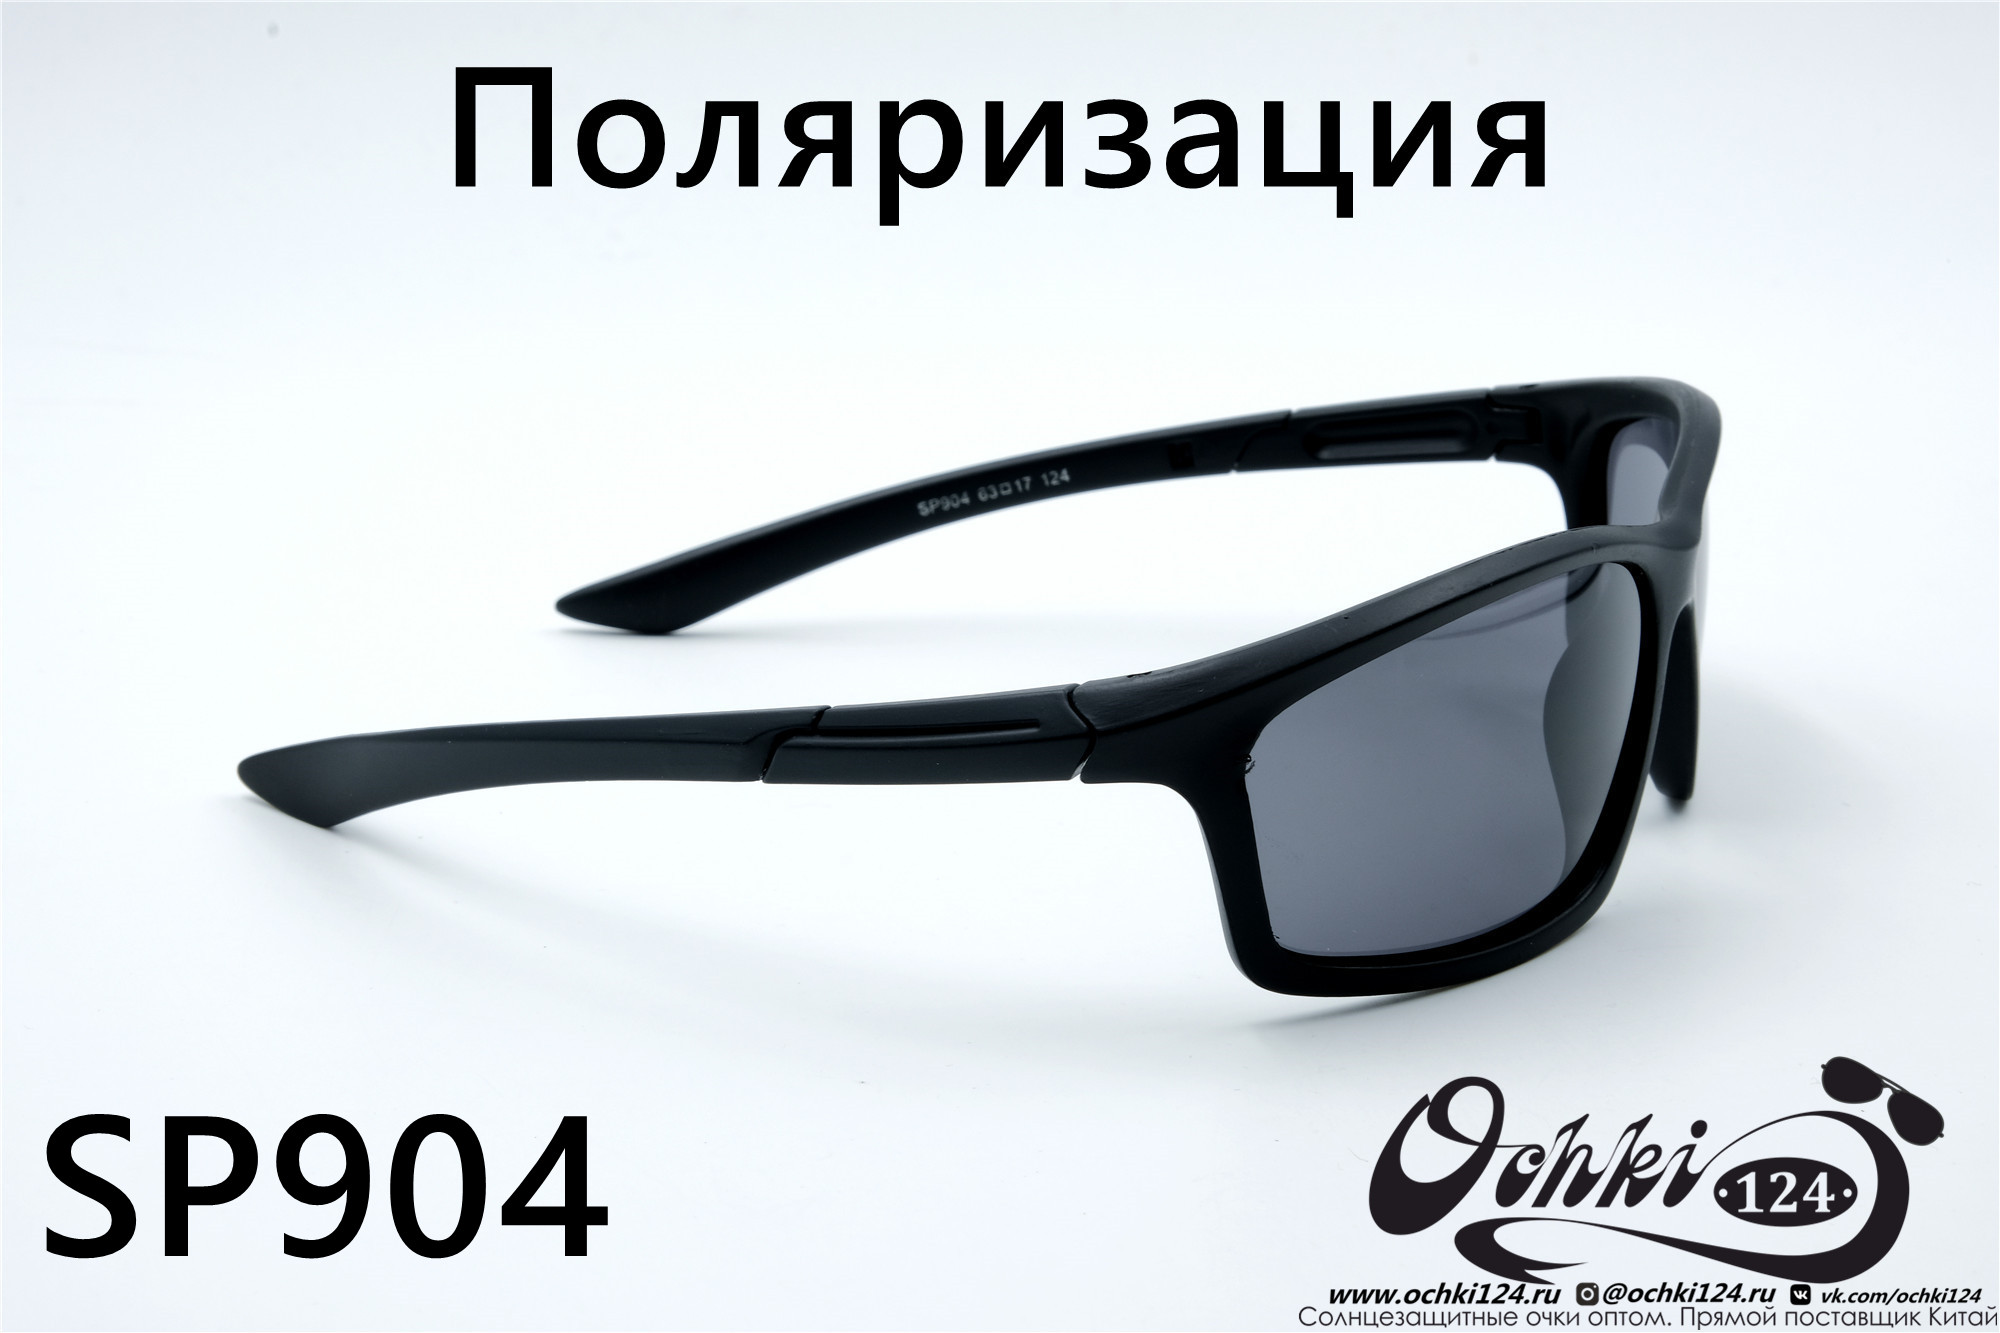  Солнцезащитные очки картинка 2022 Мужские Поляризованные Спорт Materice SP904-2 